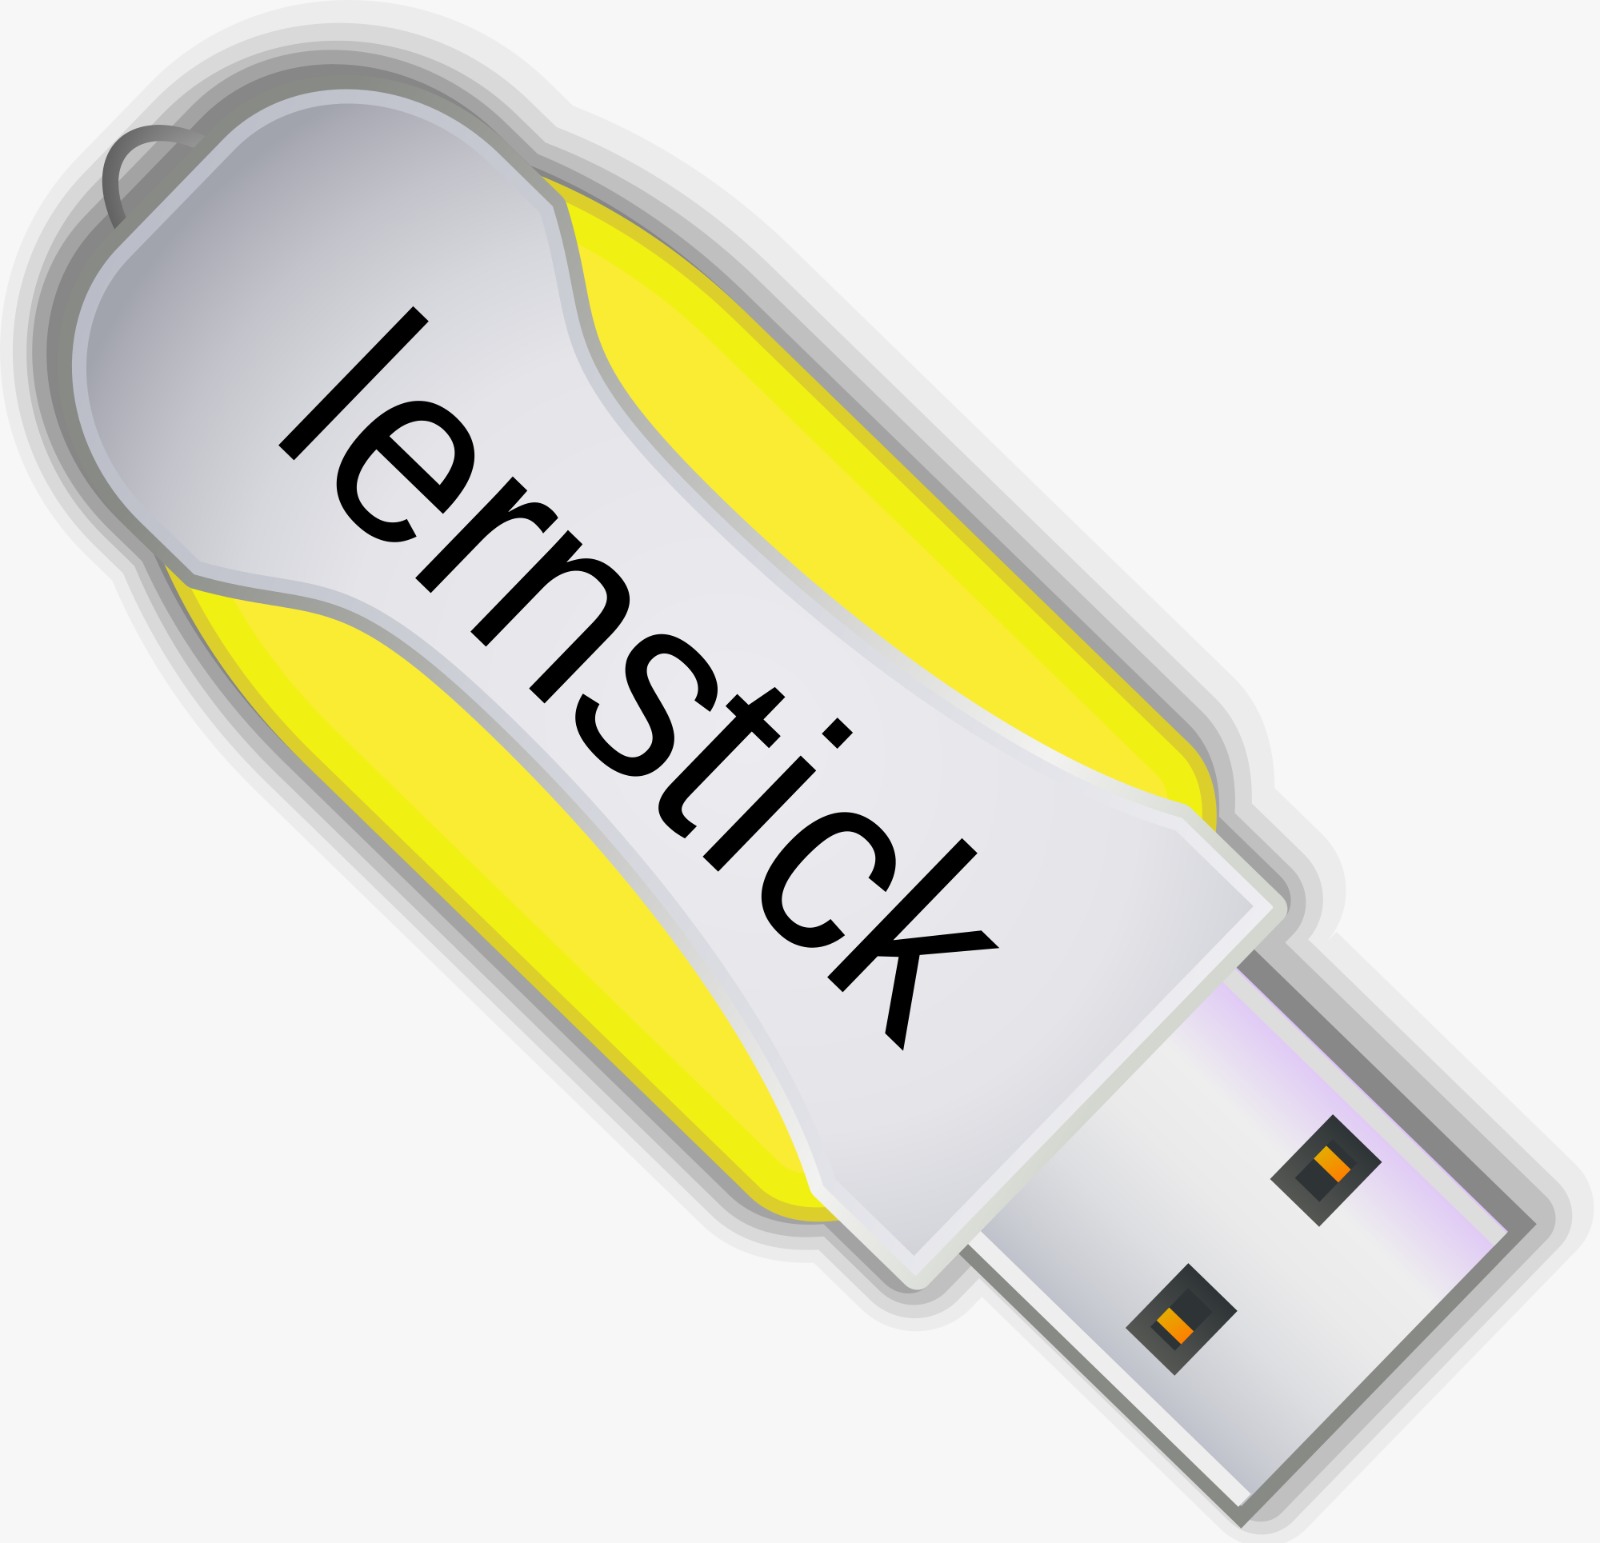 Lernstick goes secure